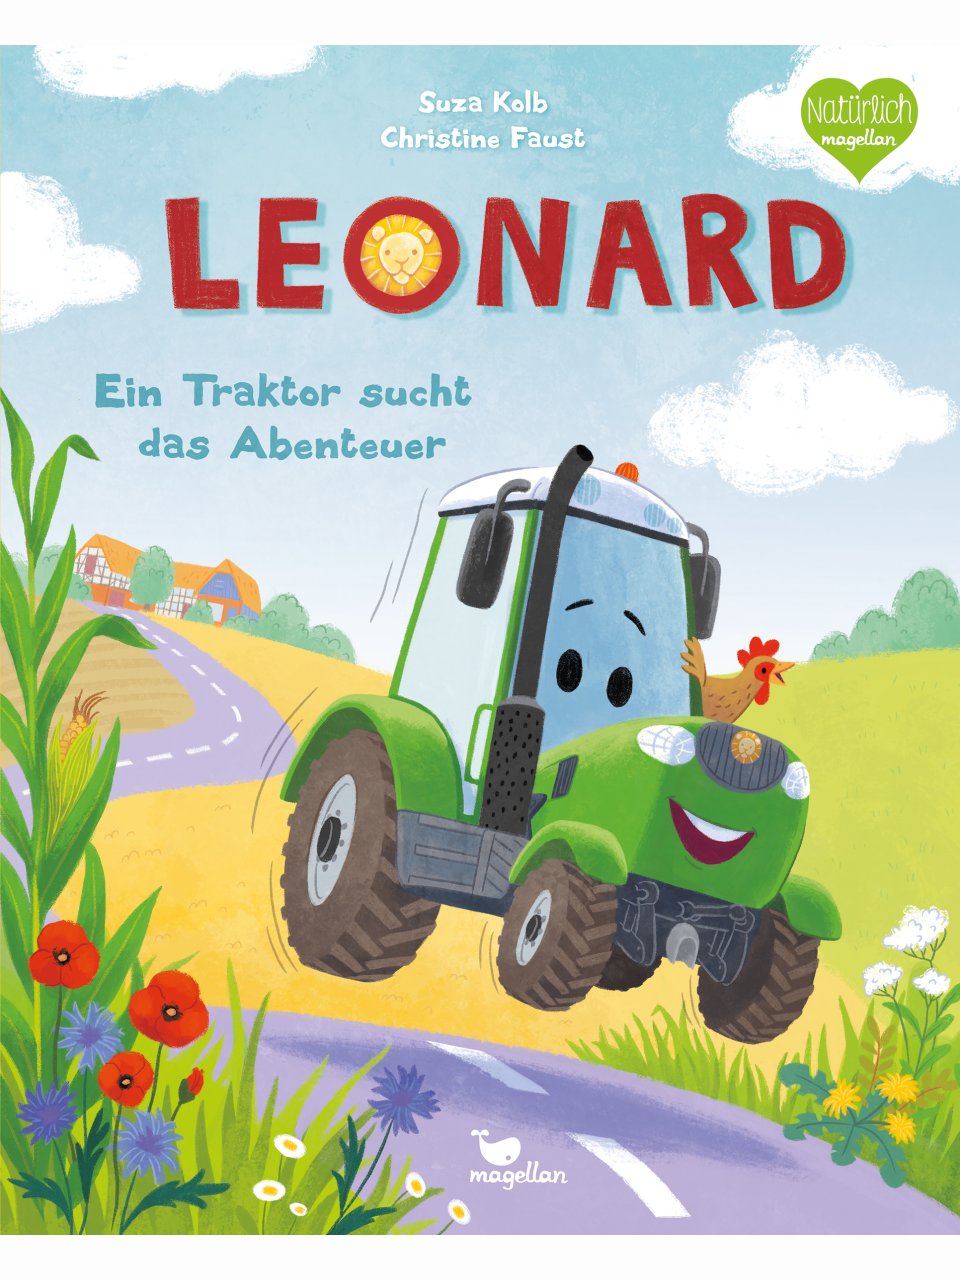 Leonard – Ein Traktor sucht das Abenteuer